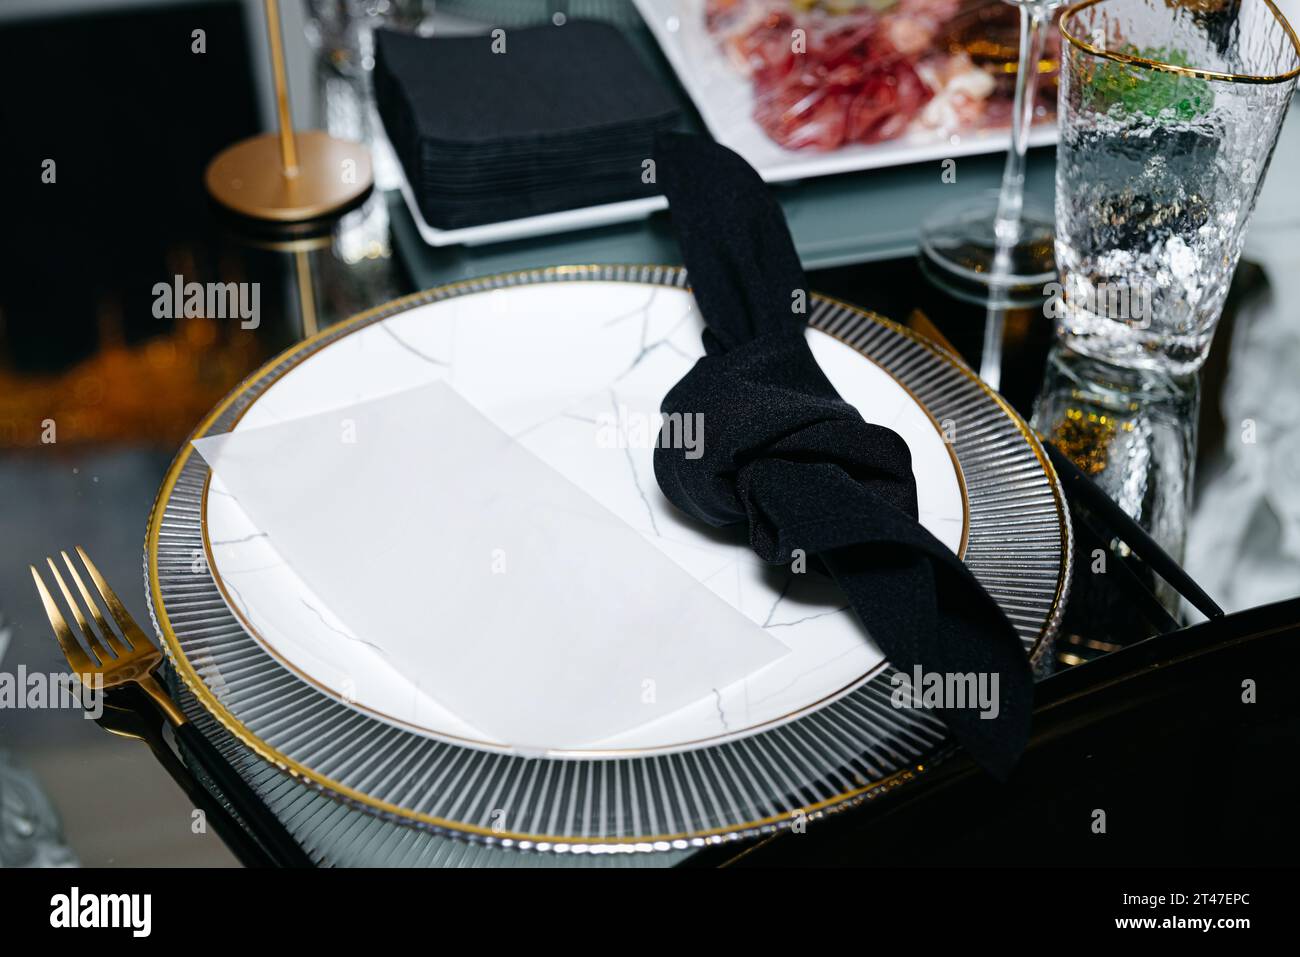 Eine schwarze Serviette, elegant geknotet und auf einem raffinierten Teller platziert, ziert einen Spiegeltisch im luxuriösen Ambiente eines Restaurants. Stockfoto